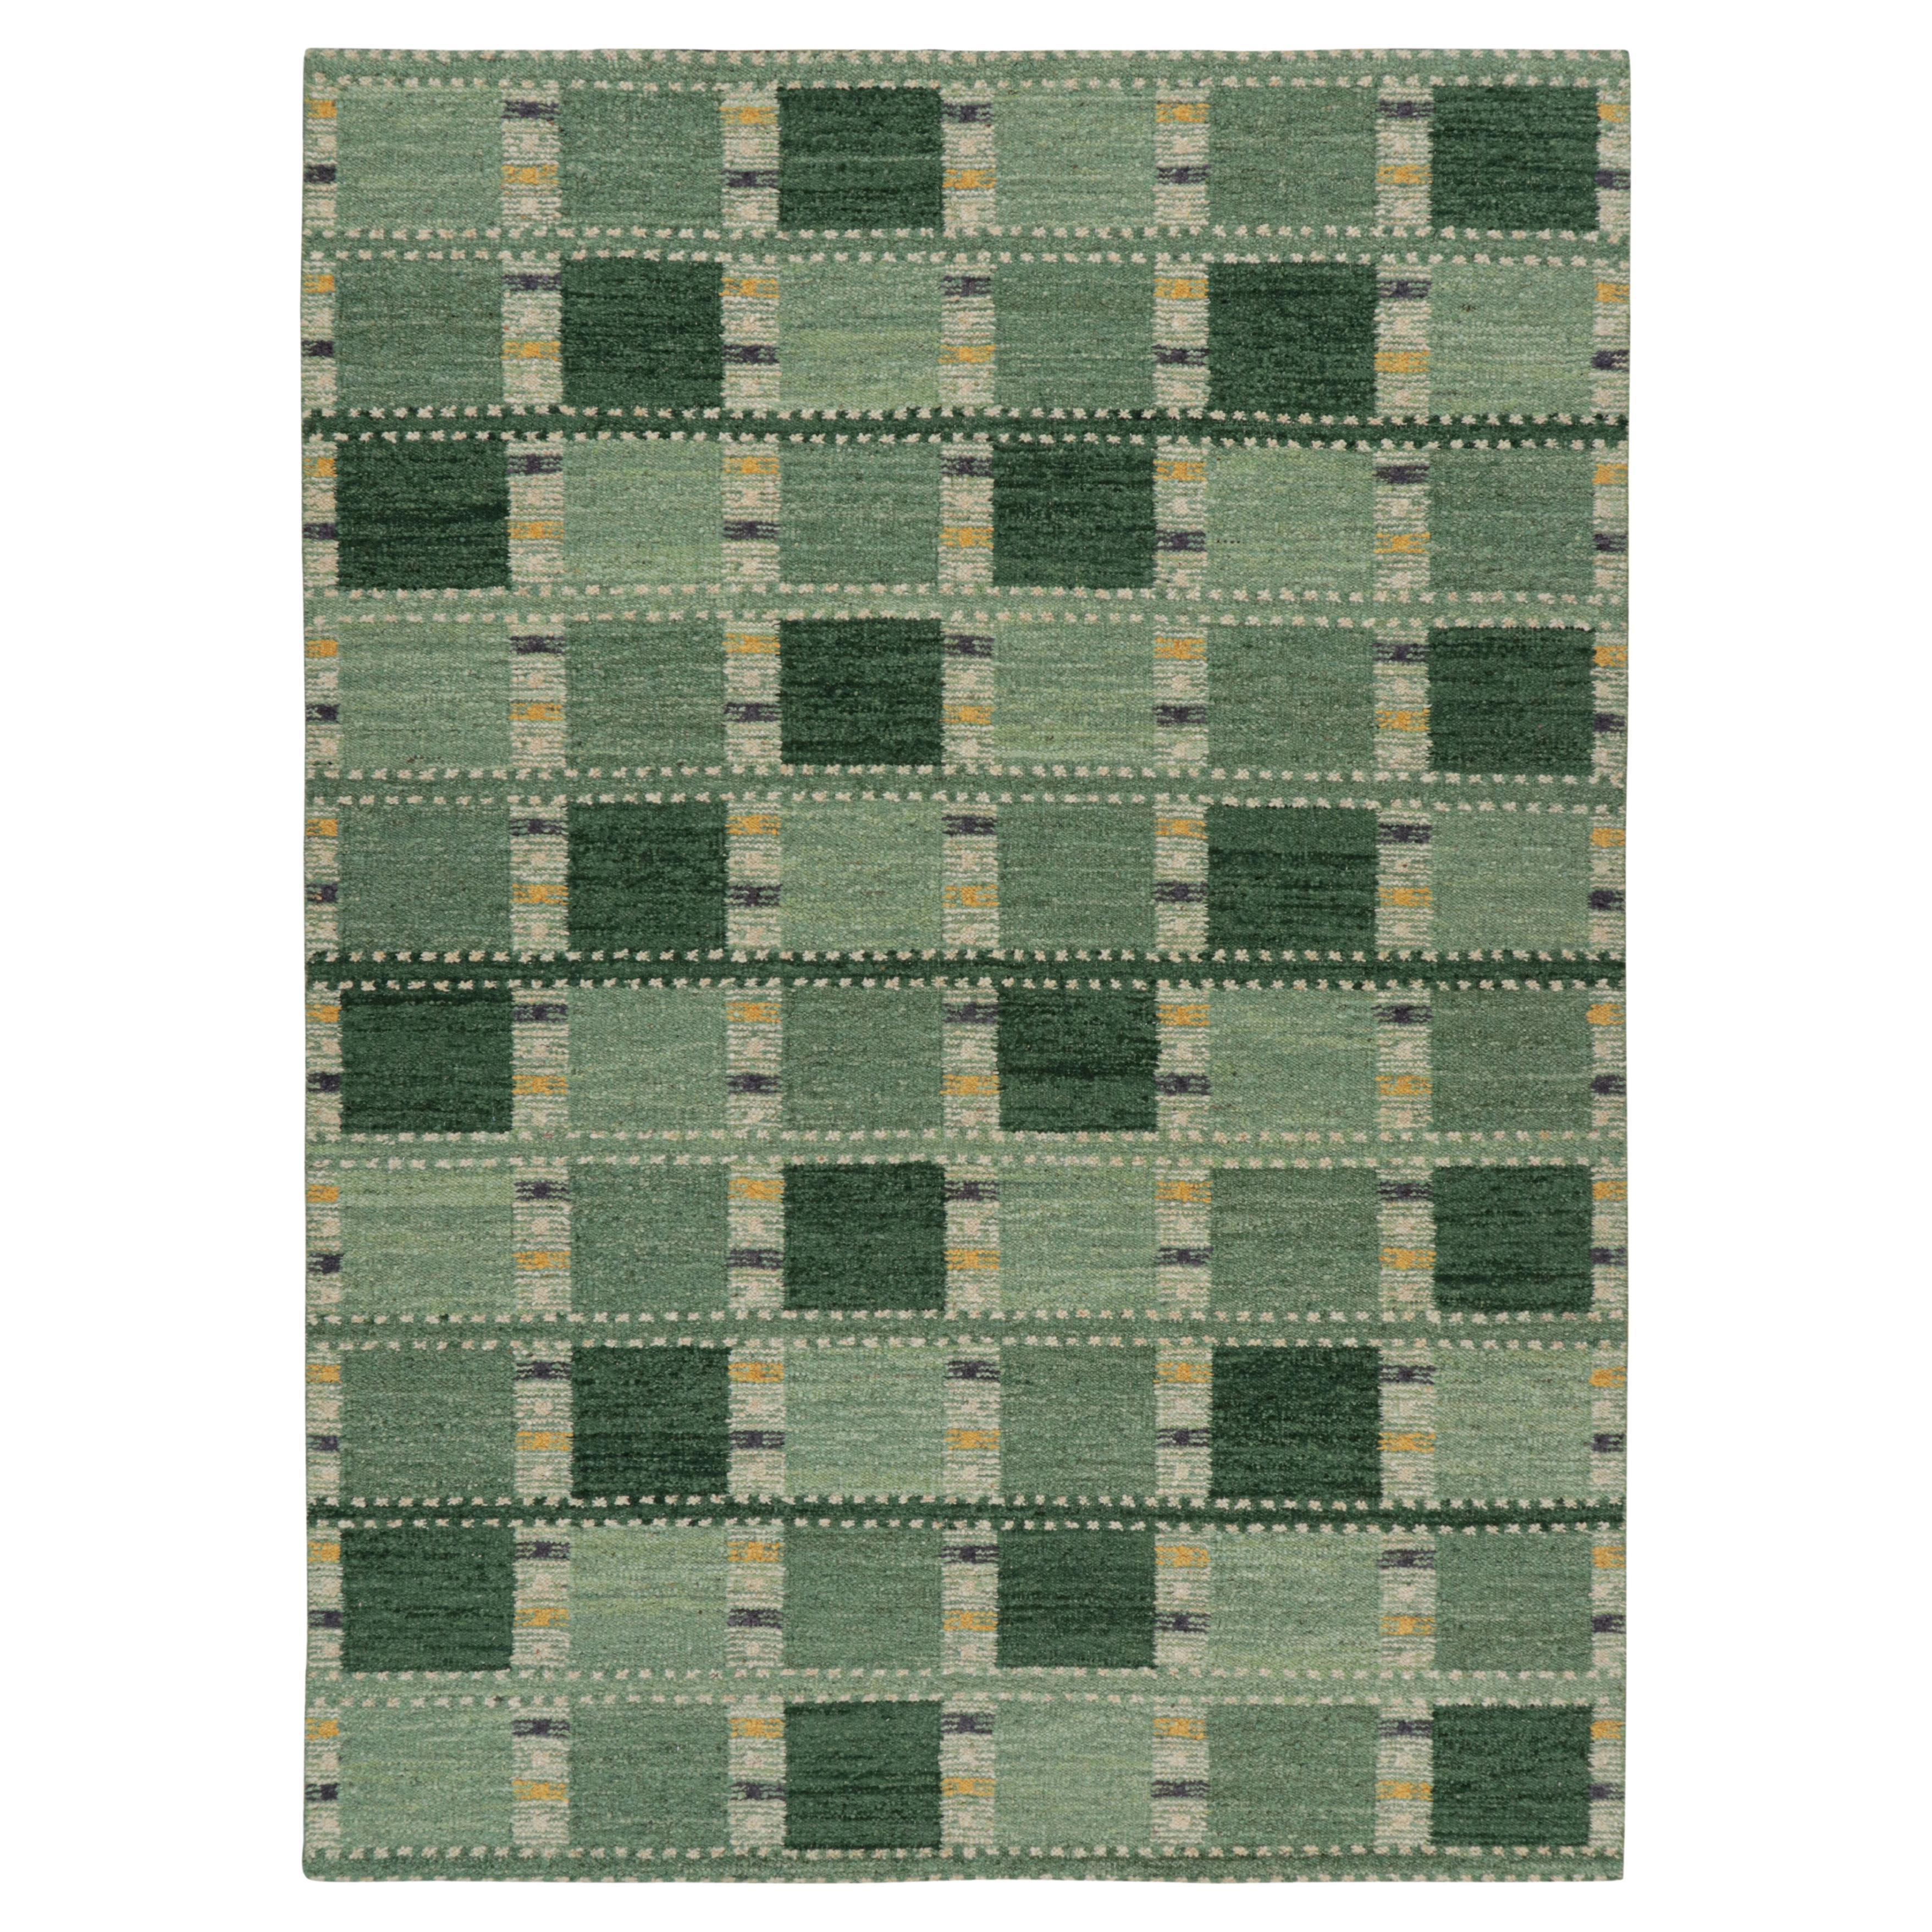 Rug & Kilim's Teppich im skandinavischen Stil in Grüntönen mit geometrischen Mustern